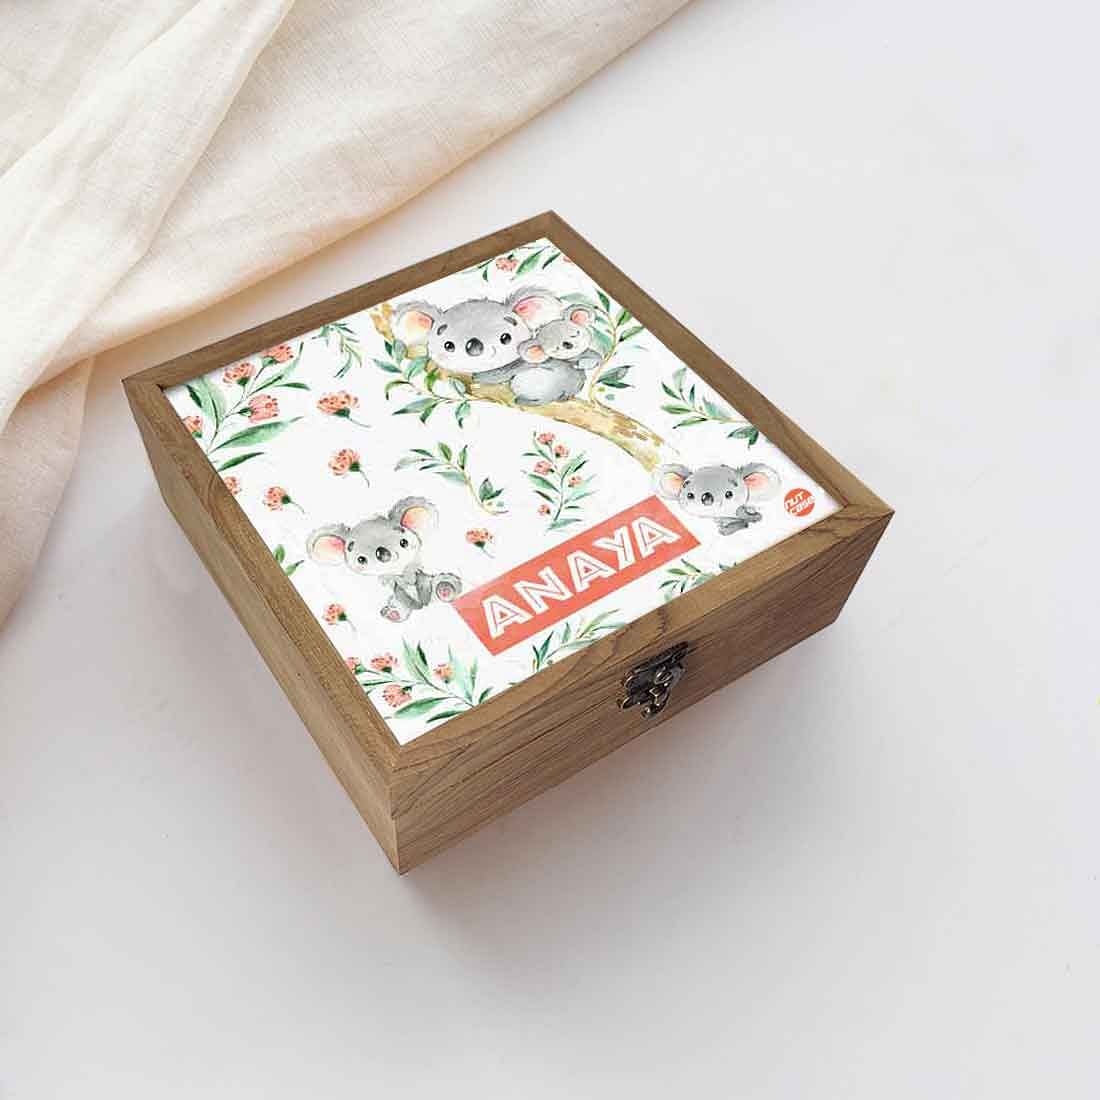 Personalized Wooden Jewellery Box for Kids - Cute Koala Nutcase